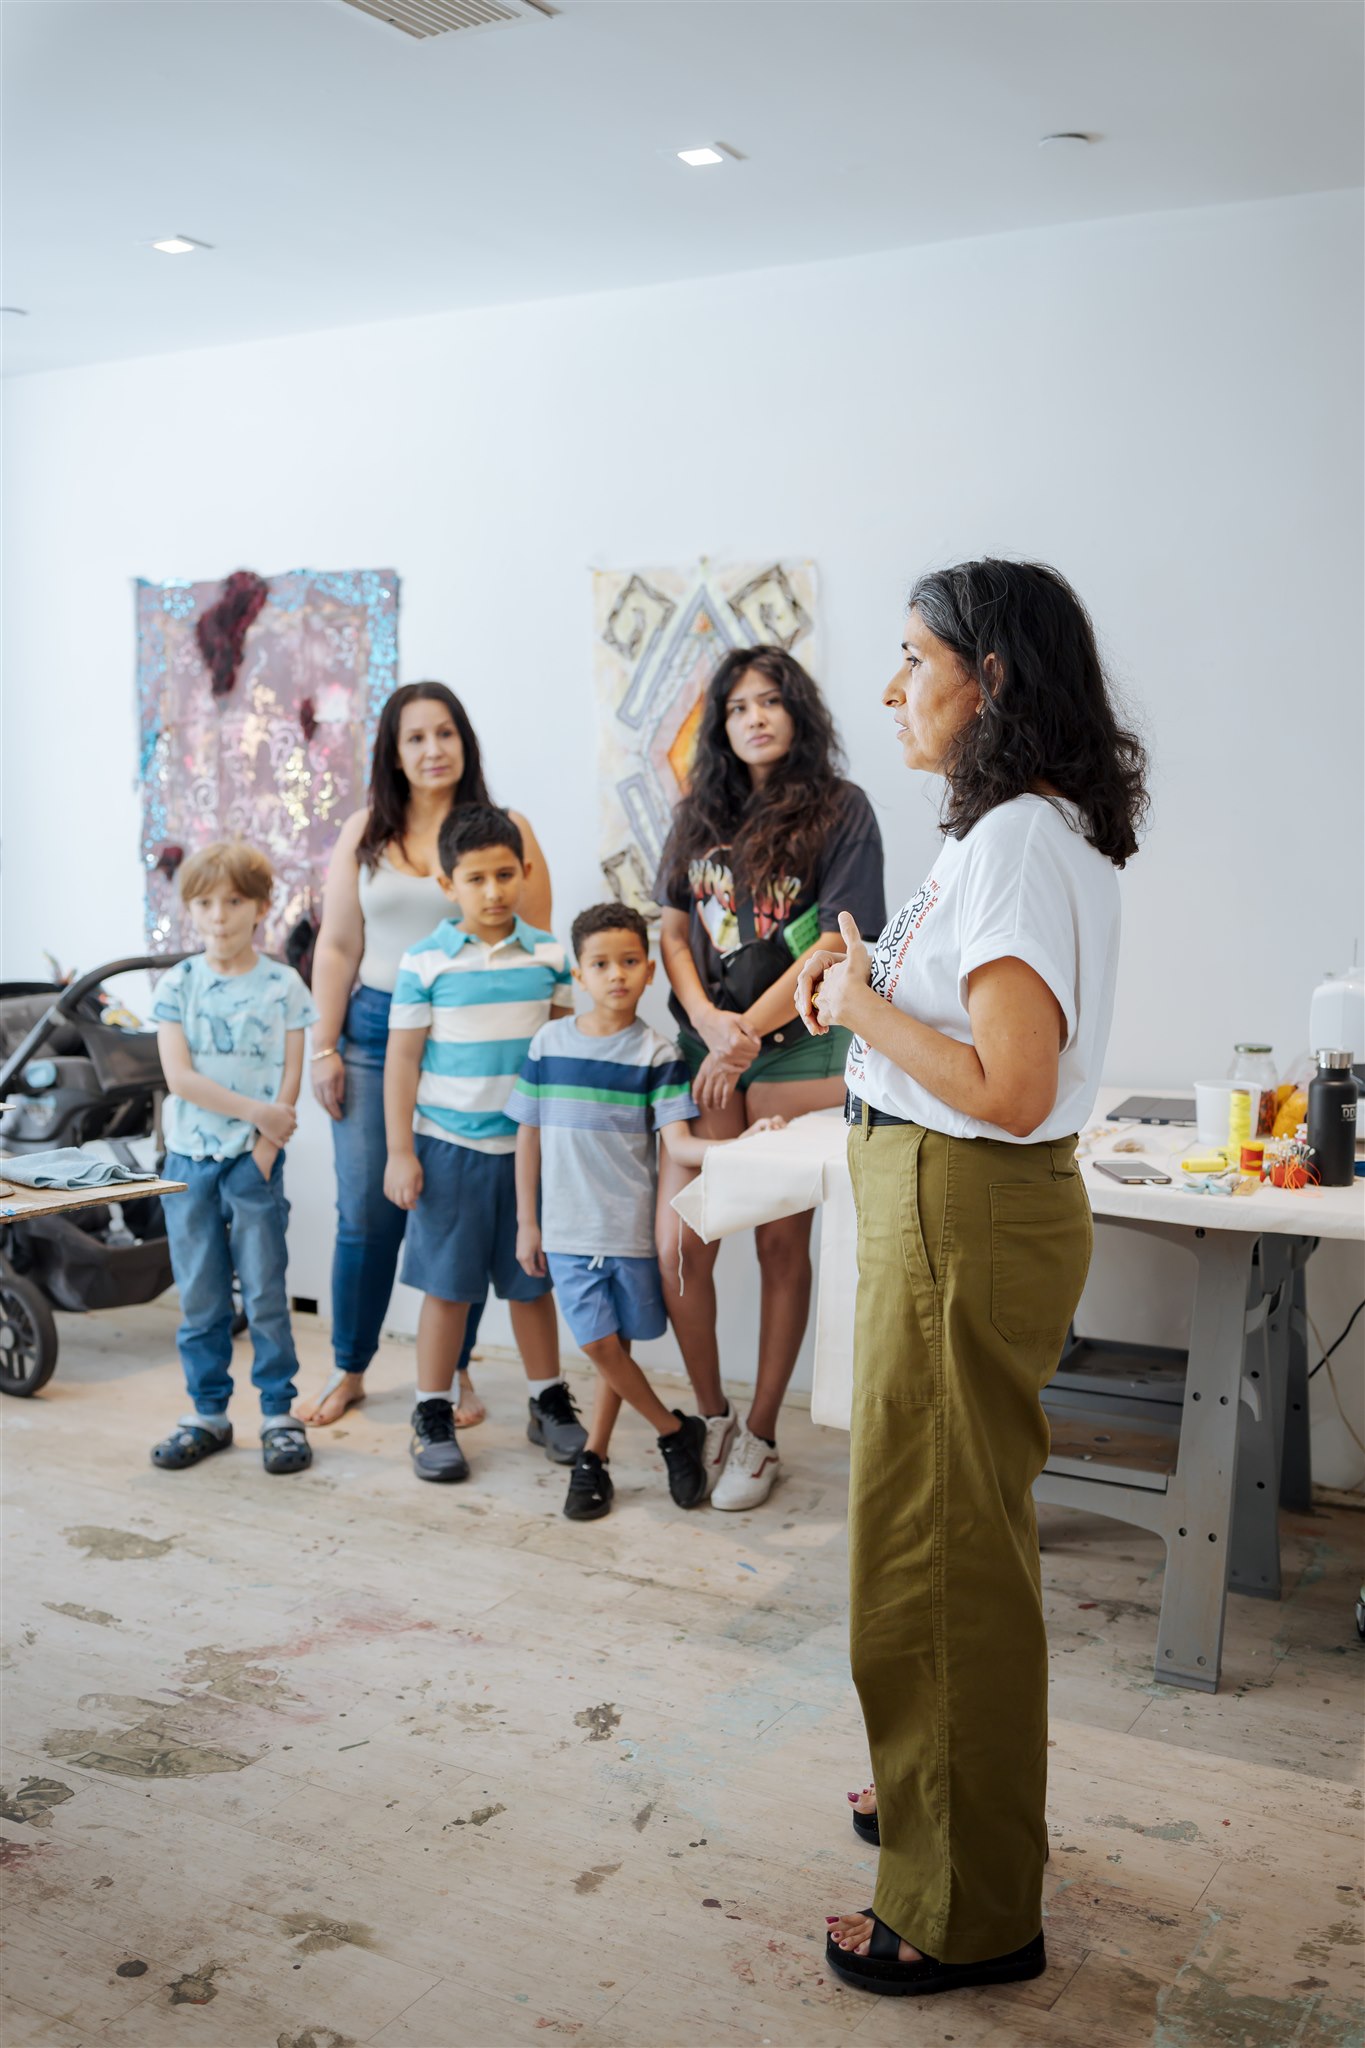 Lina Puerta in the New Wave Art studio with children